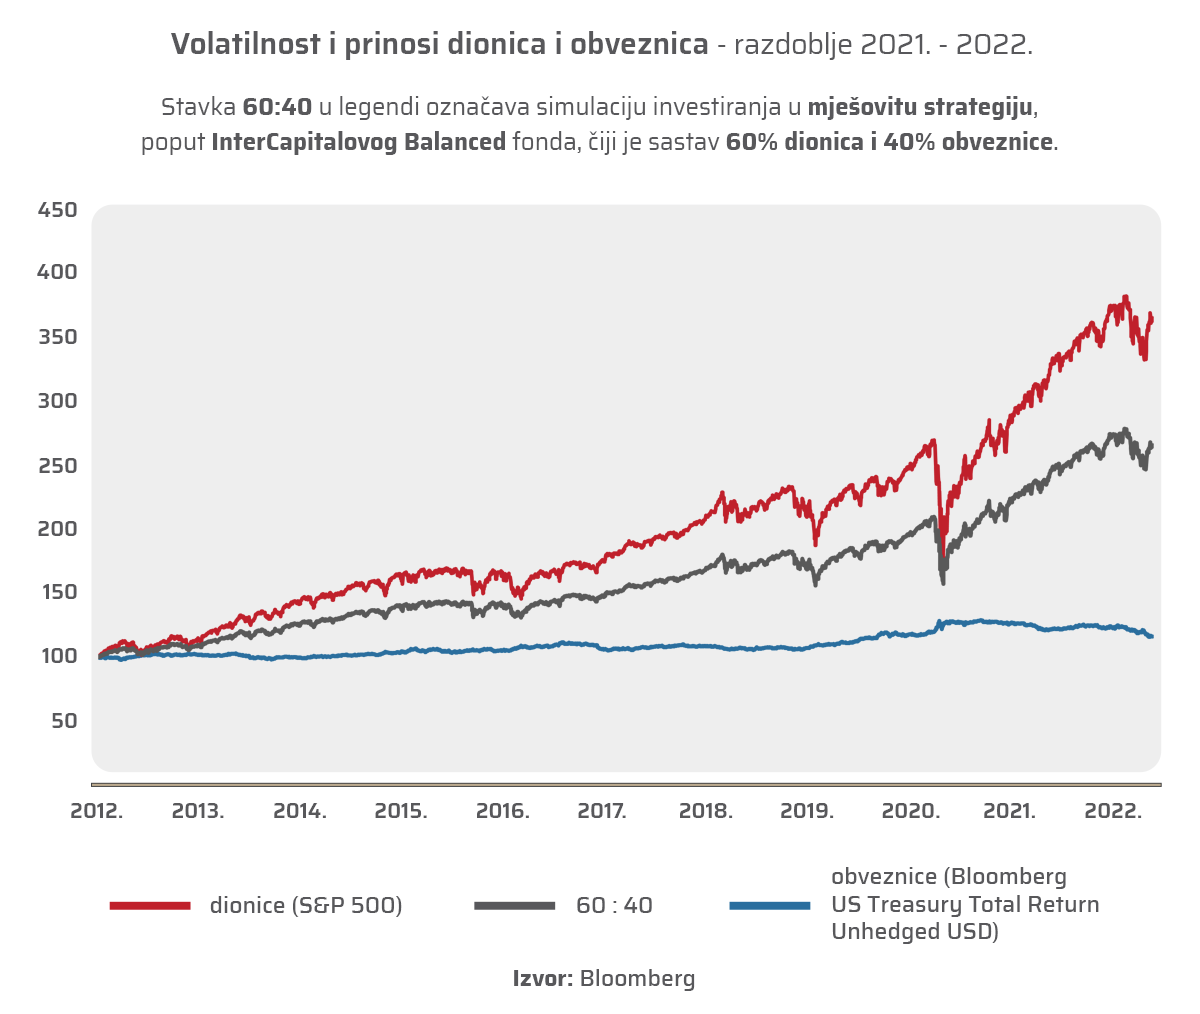 Dugoročno ulaganje - graf prikazuje kretanje vrijednosti dionica i obveznica u razdoblju 2012. do 2022.